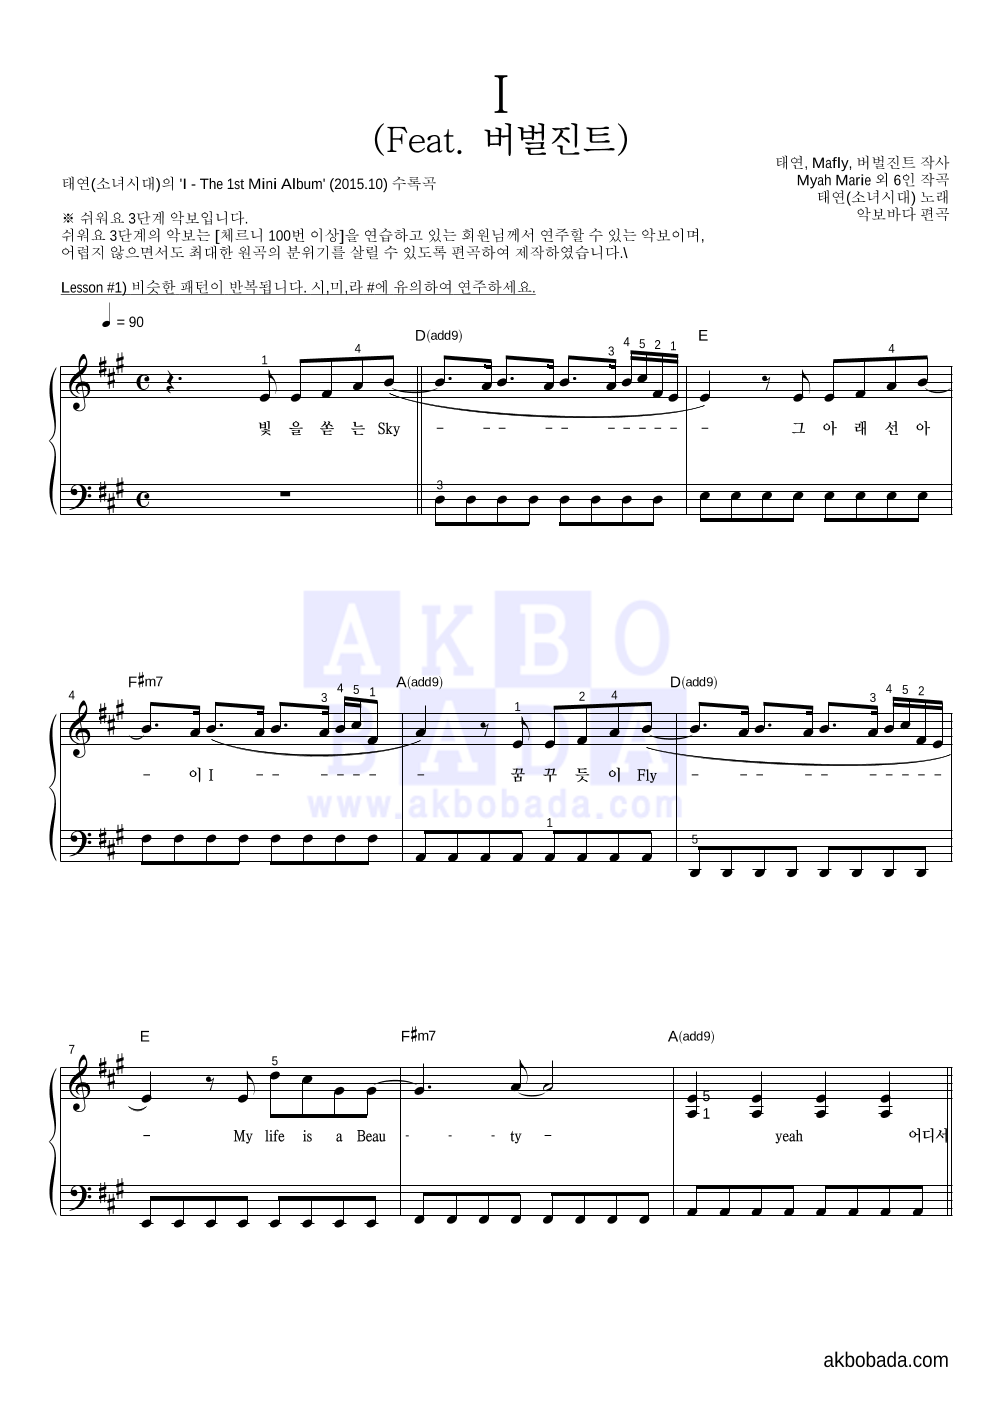 태연 - I (Feat. 버벌진트) 피아노2단-쉬워요 악보 